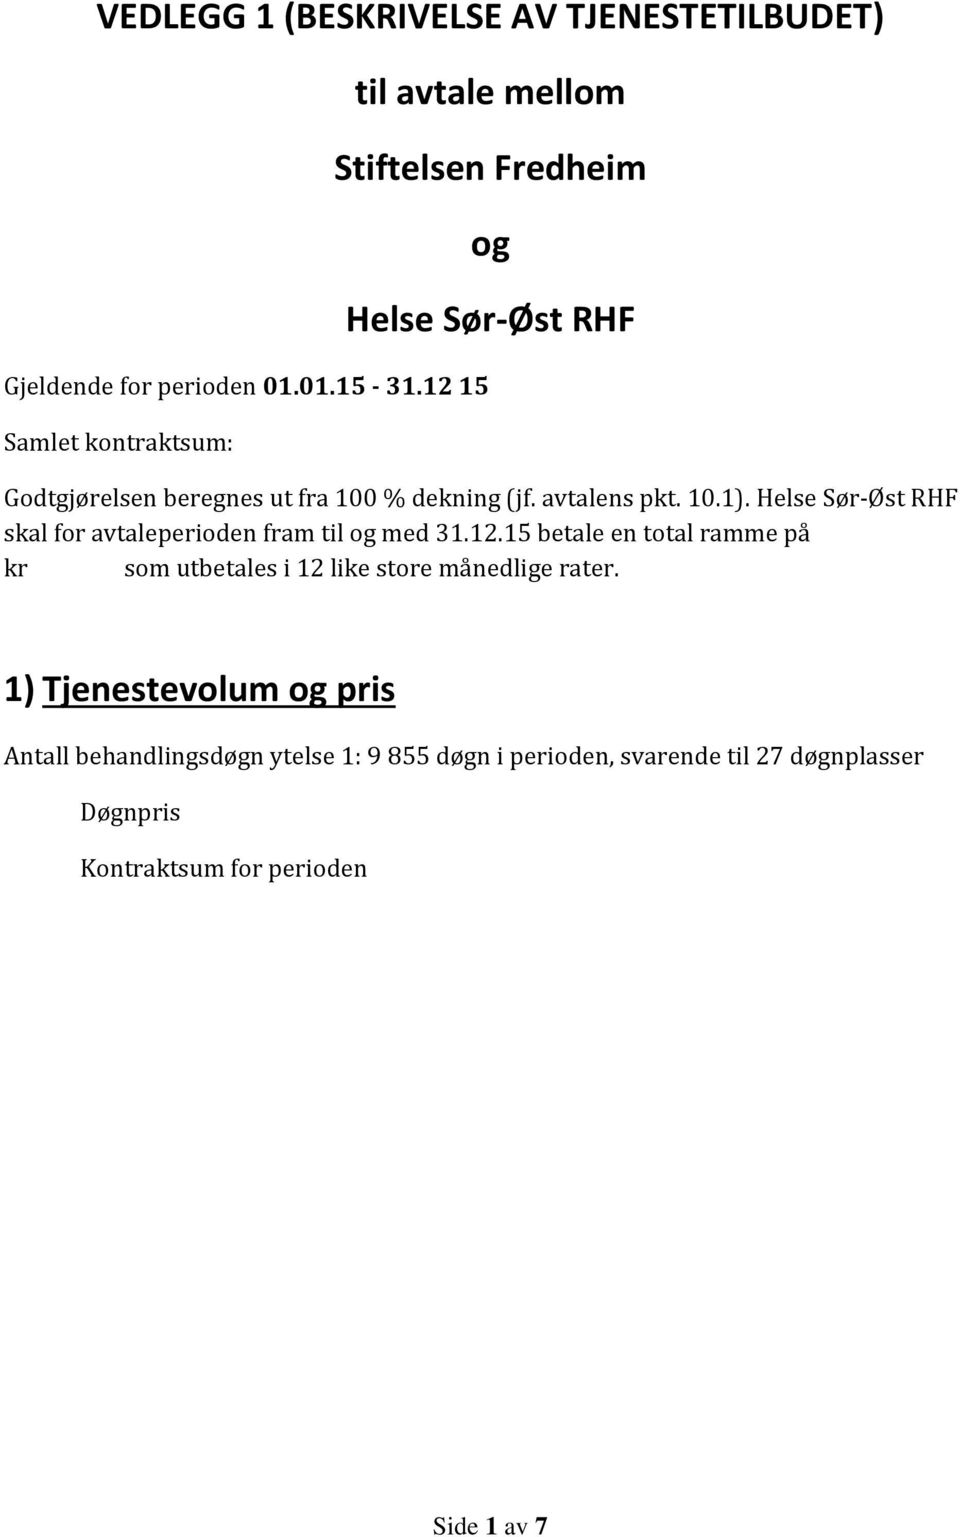 avtalens pkt. 10.1). Helse Sør-Øst RHF skal for avtaleperioden fram til og med 31.12.